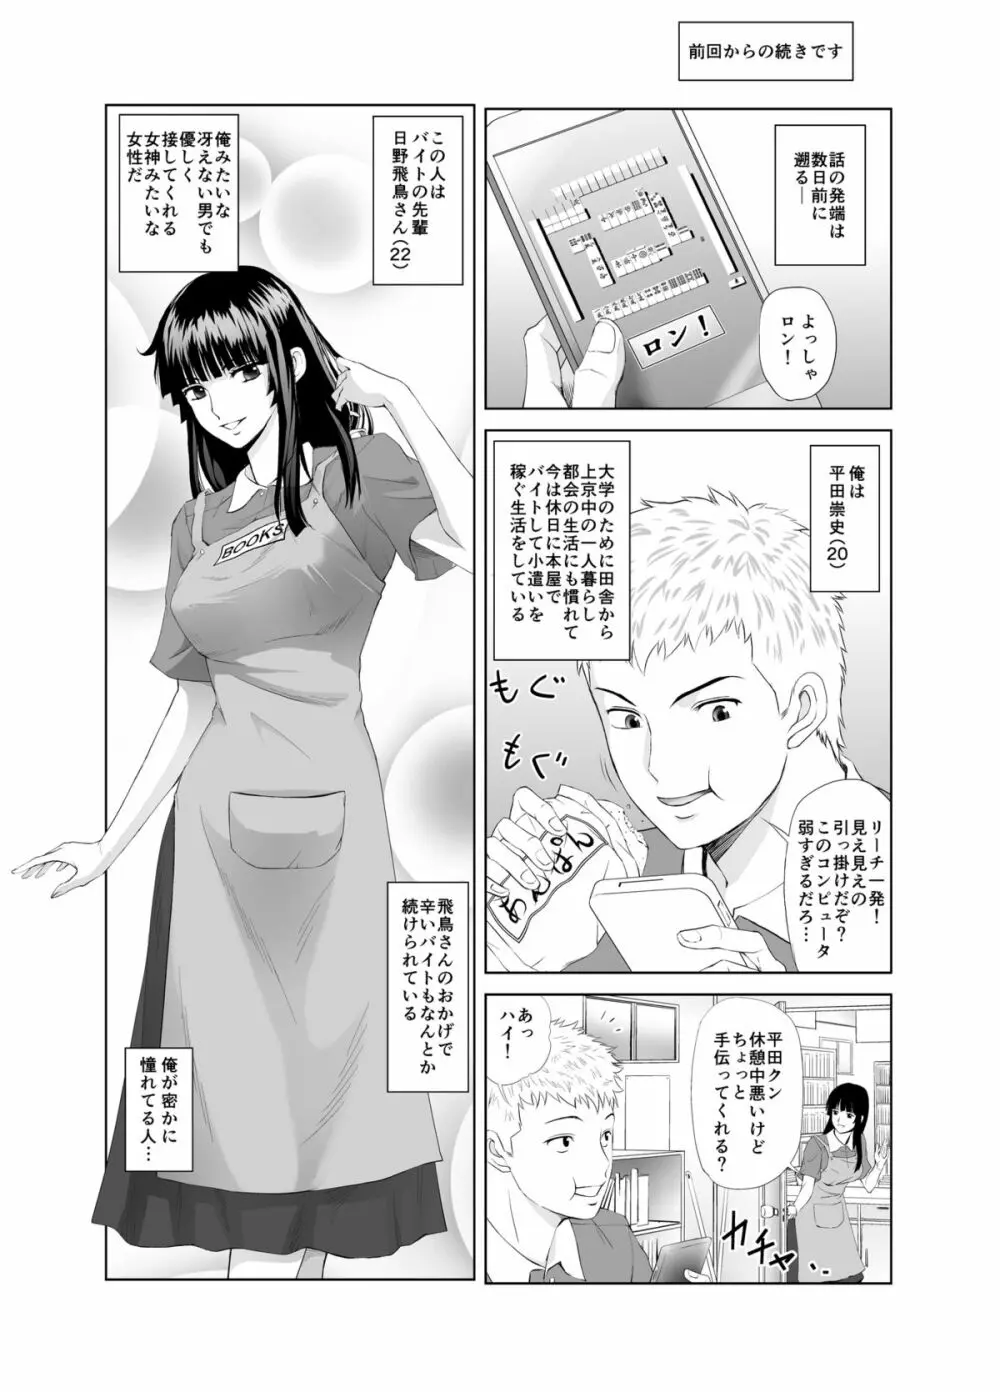 脱衣麻雀～漫画編～【完成版】 Page.4